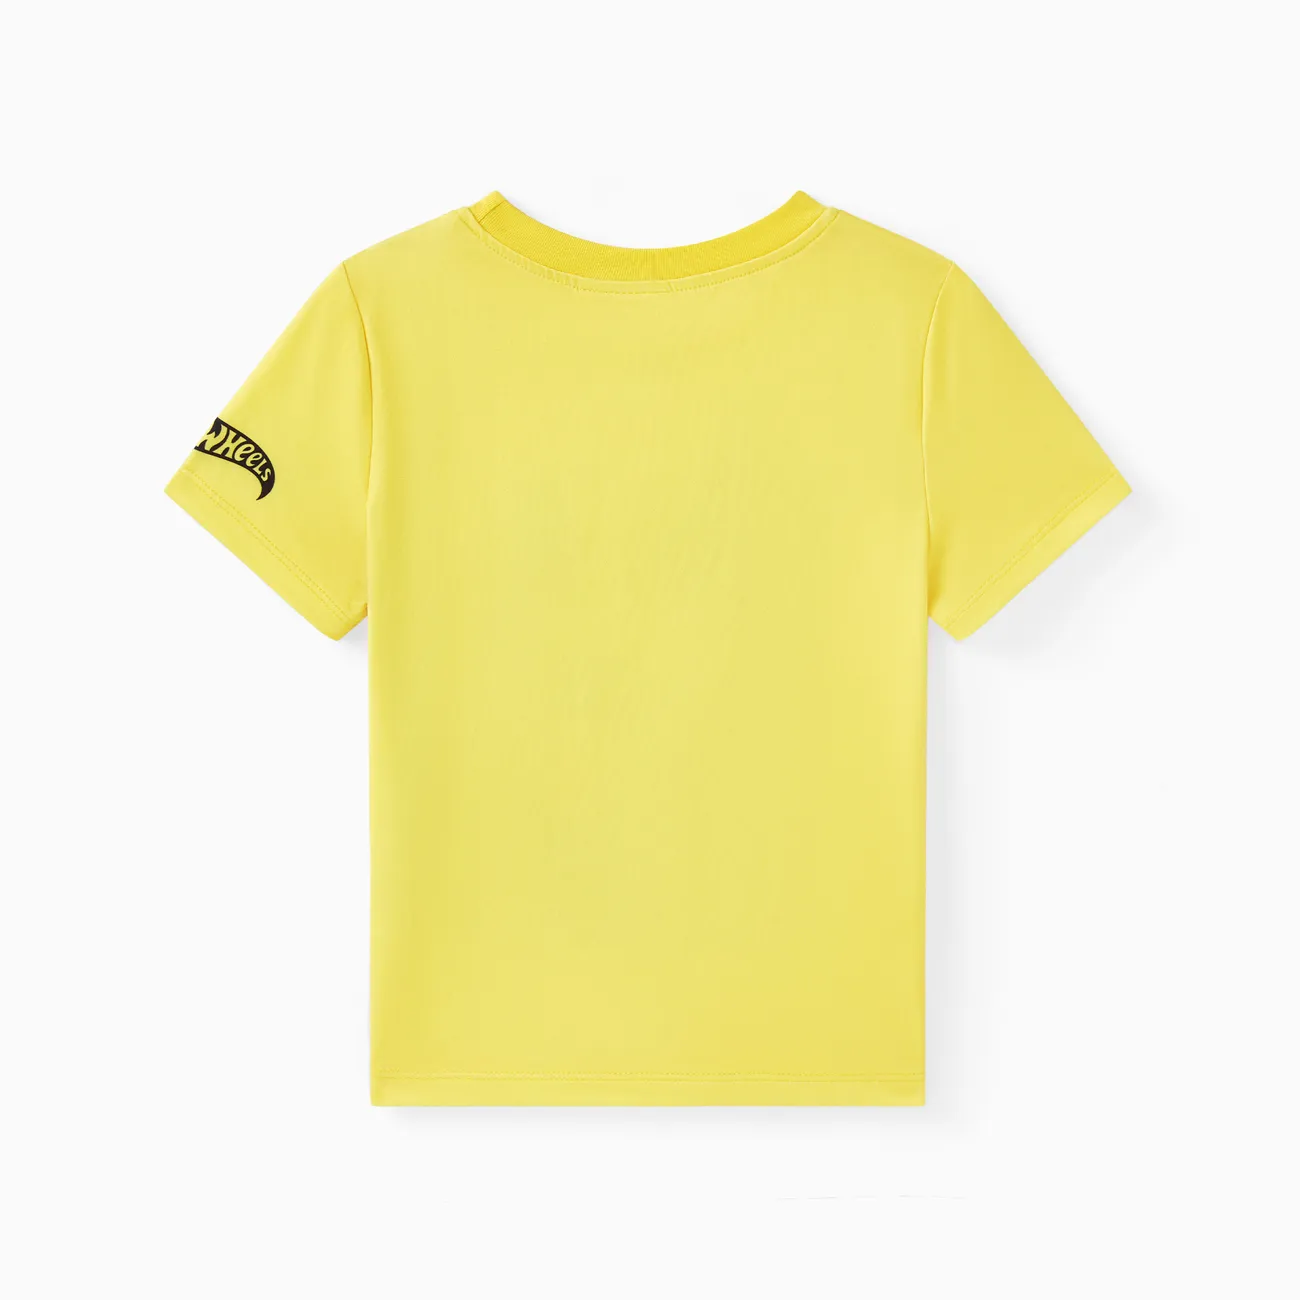 風火輪 1 件蹣跚學步男孩車輛印花 T 恤
 黃色 big image 1